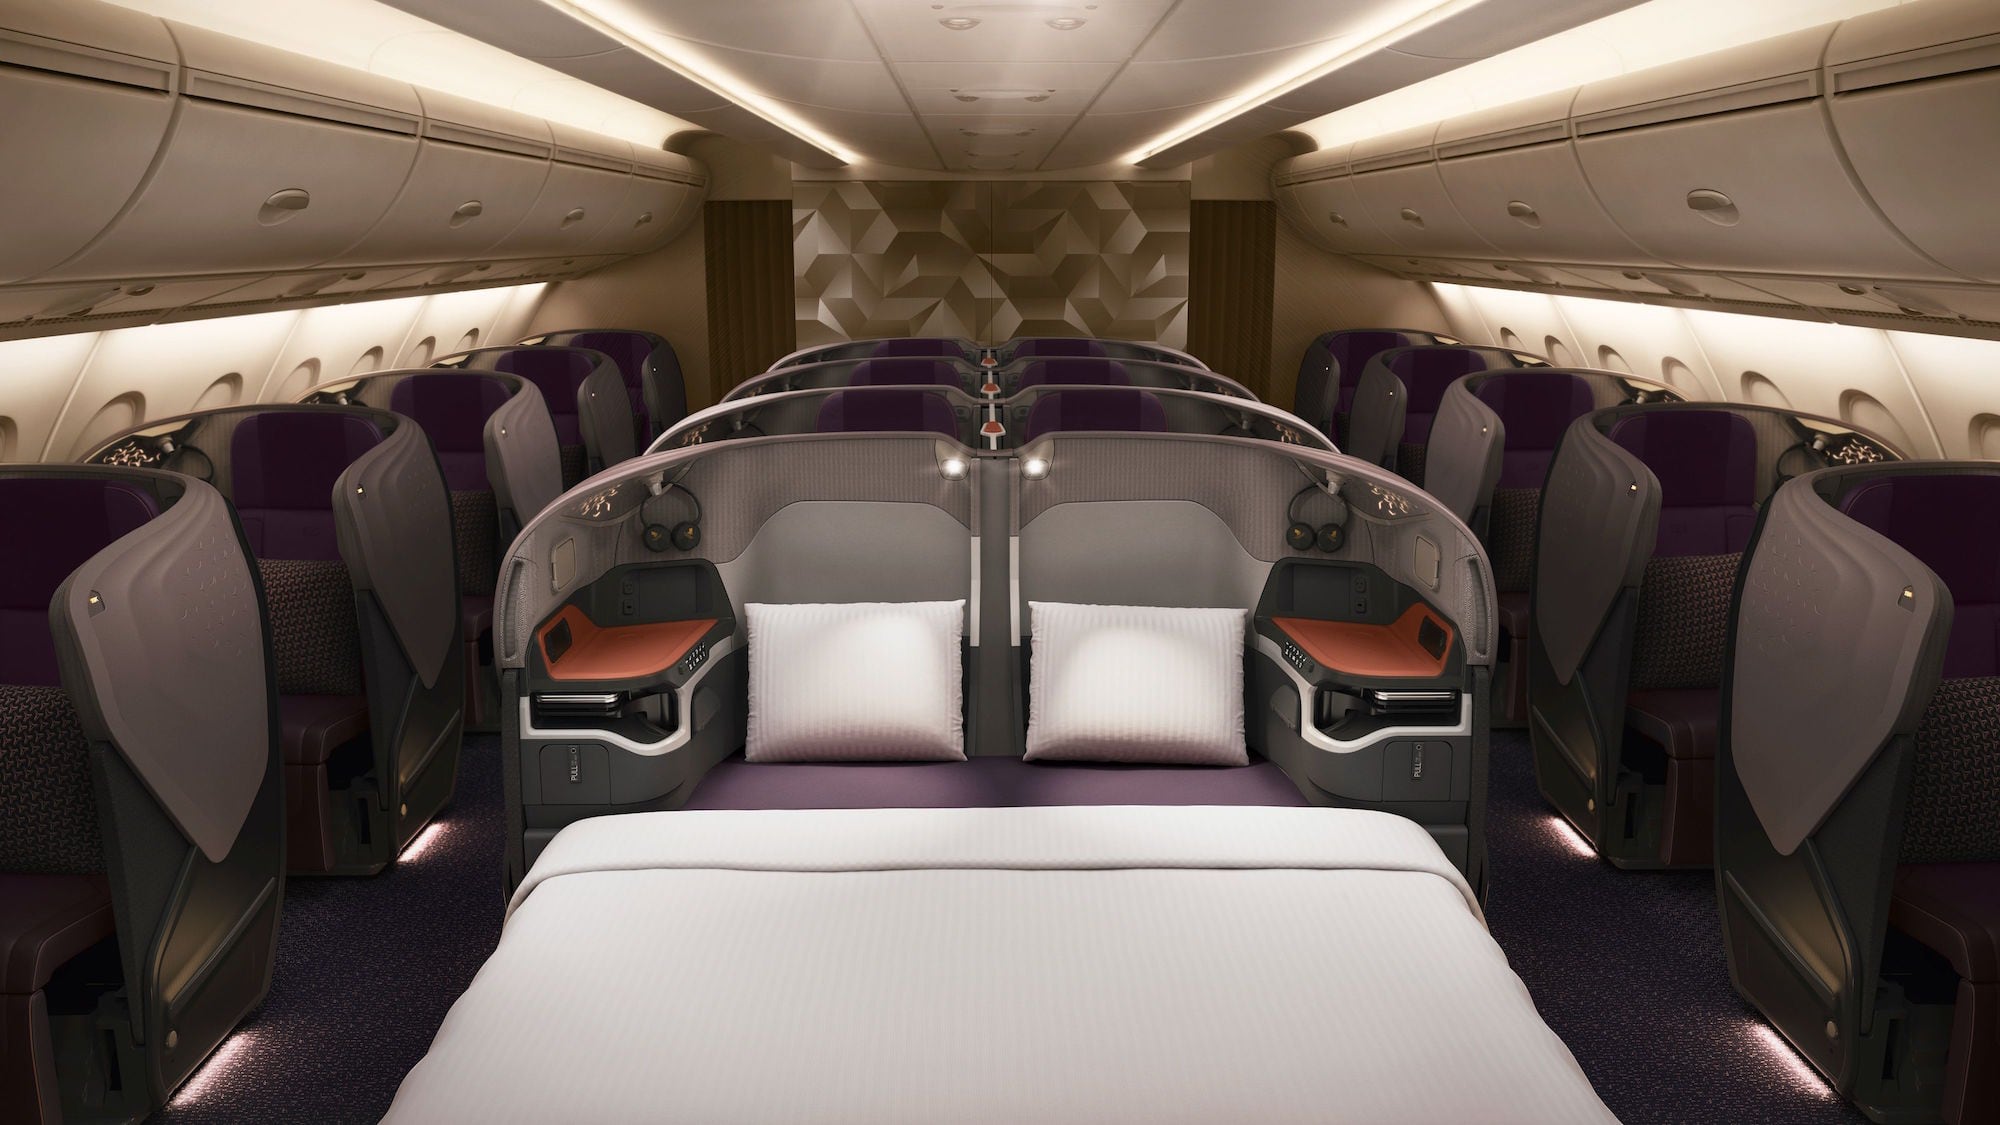 Einfach himmlisch: Die neue First Class von Singapore Airlines 8